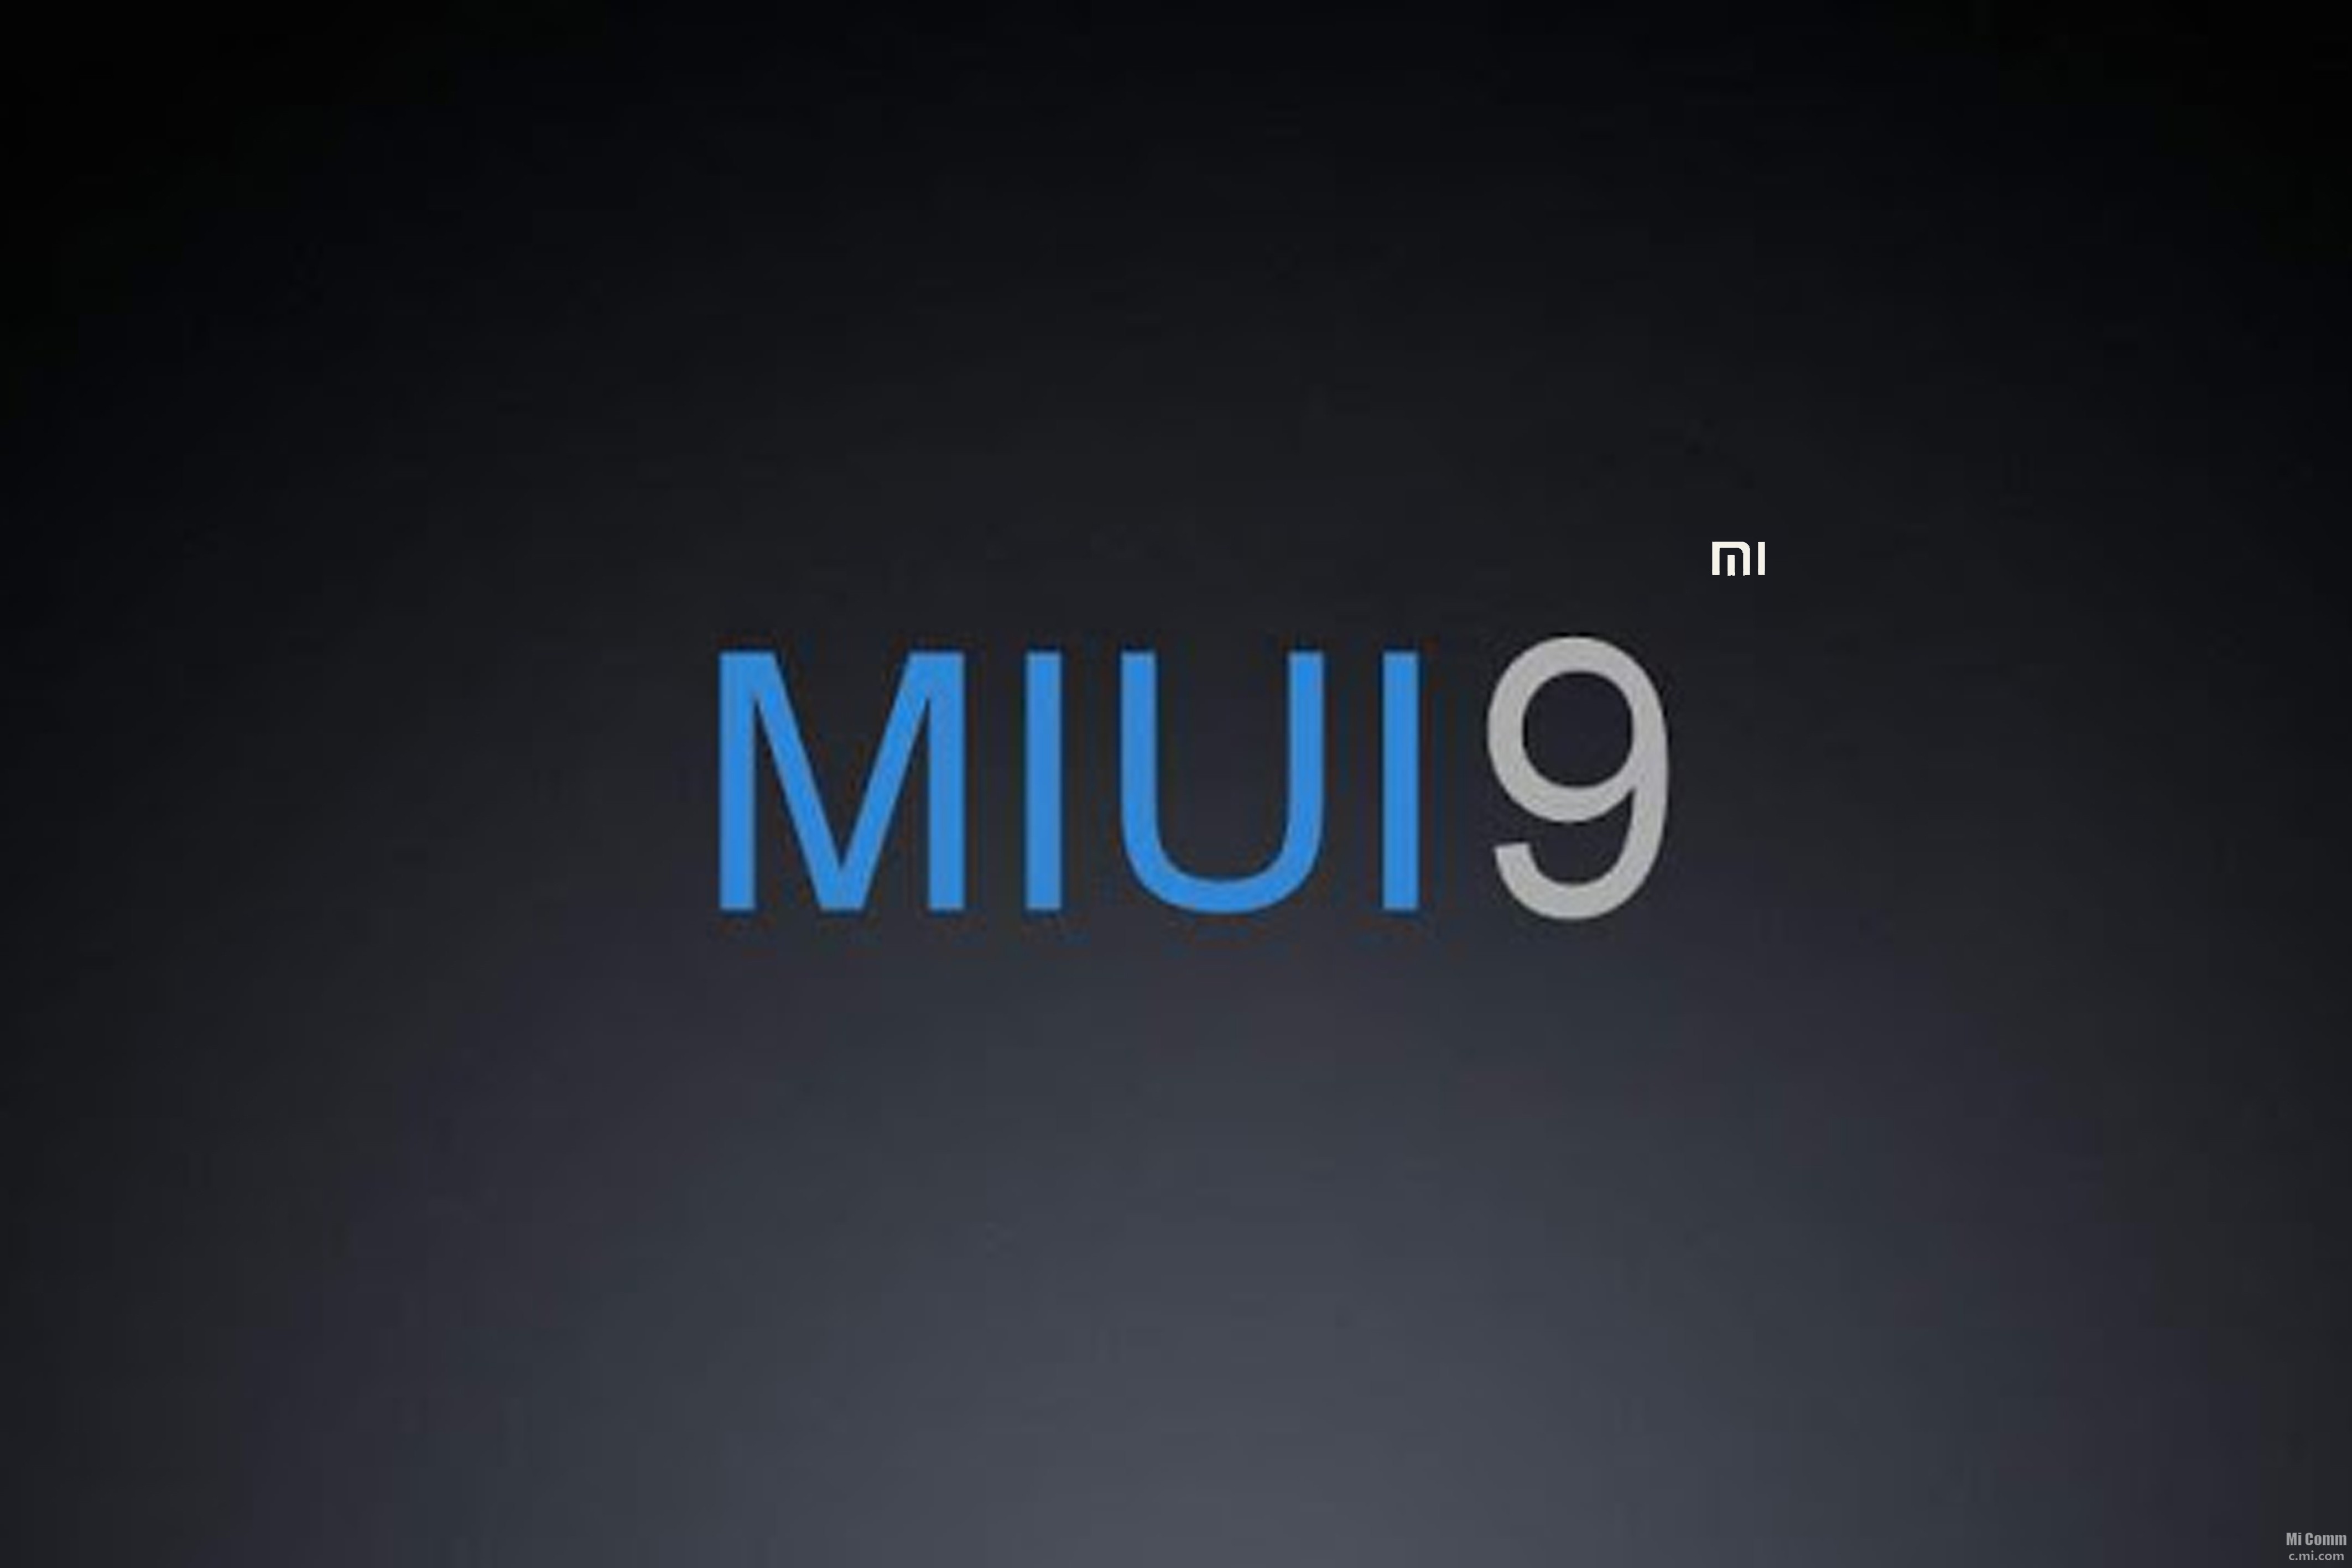 Miui down. MIUI 9. Логотип миуи. Xiaomi MIUI 9. MIUI 9 logo.